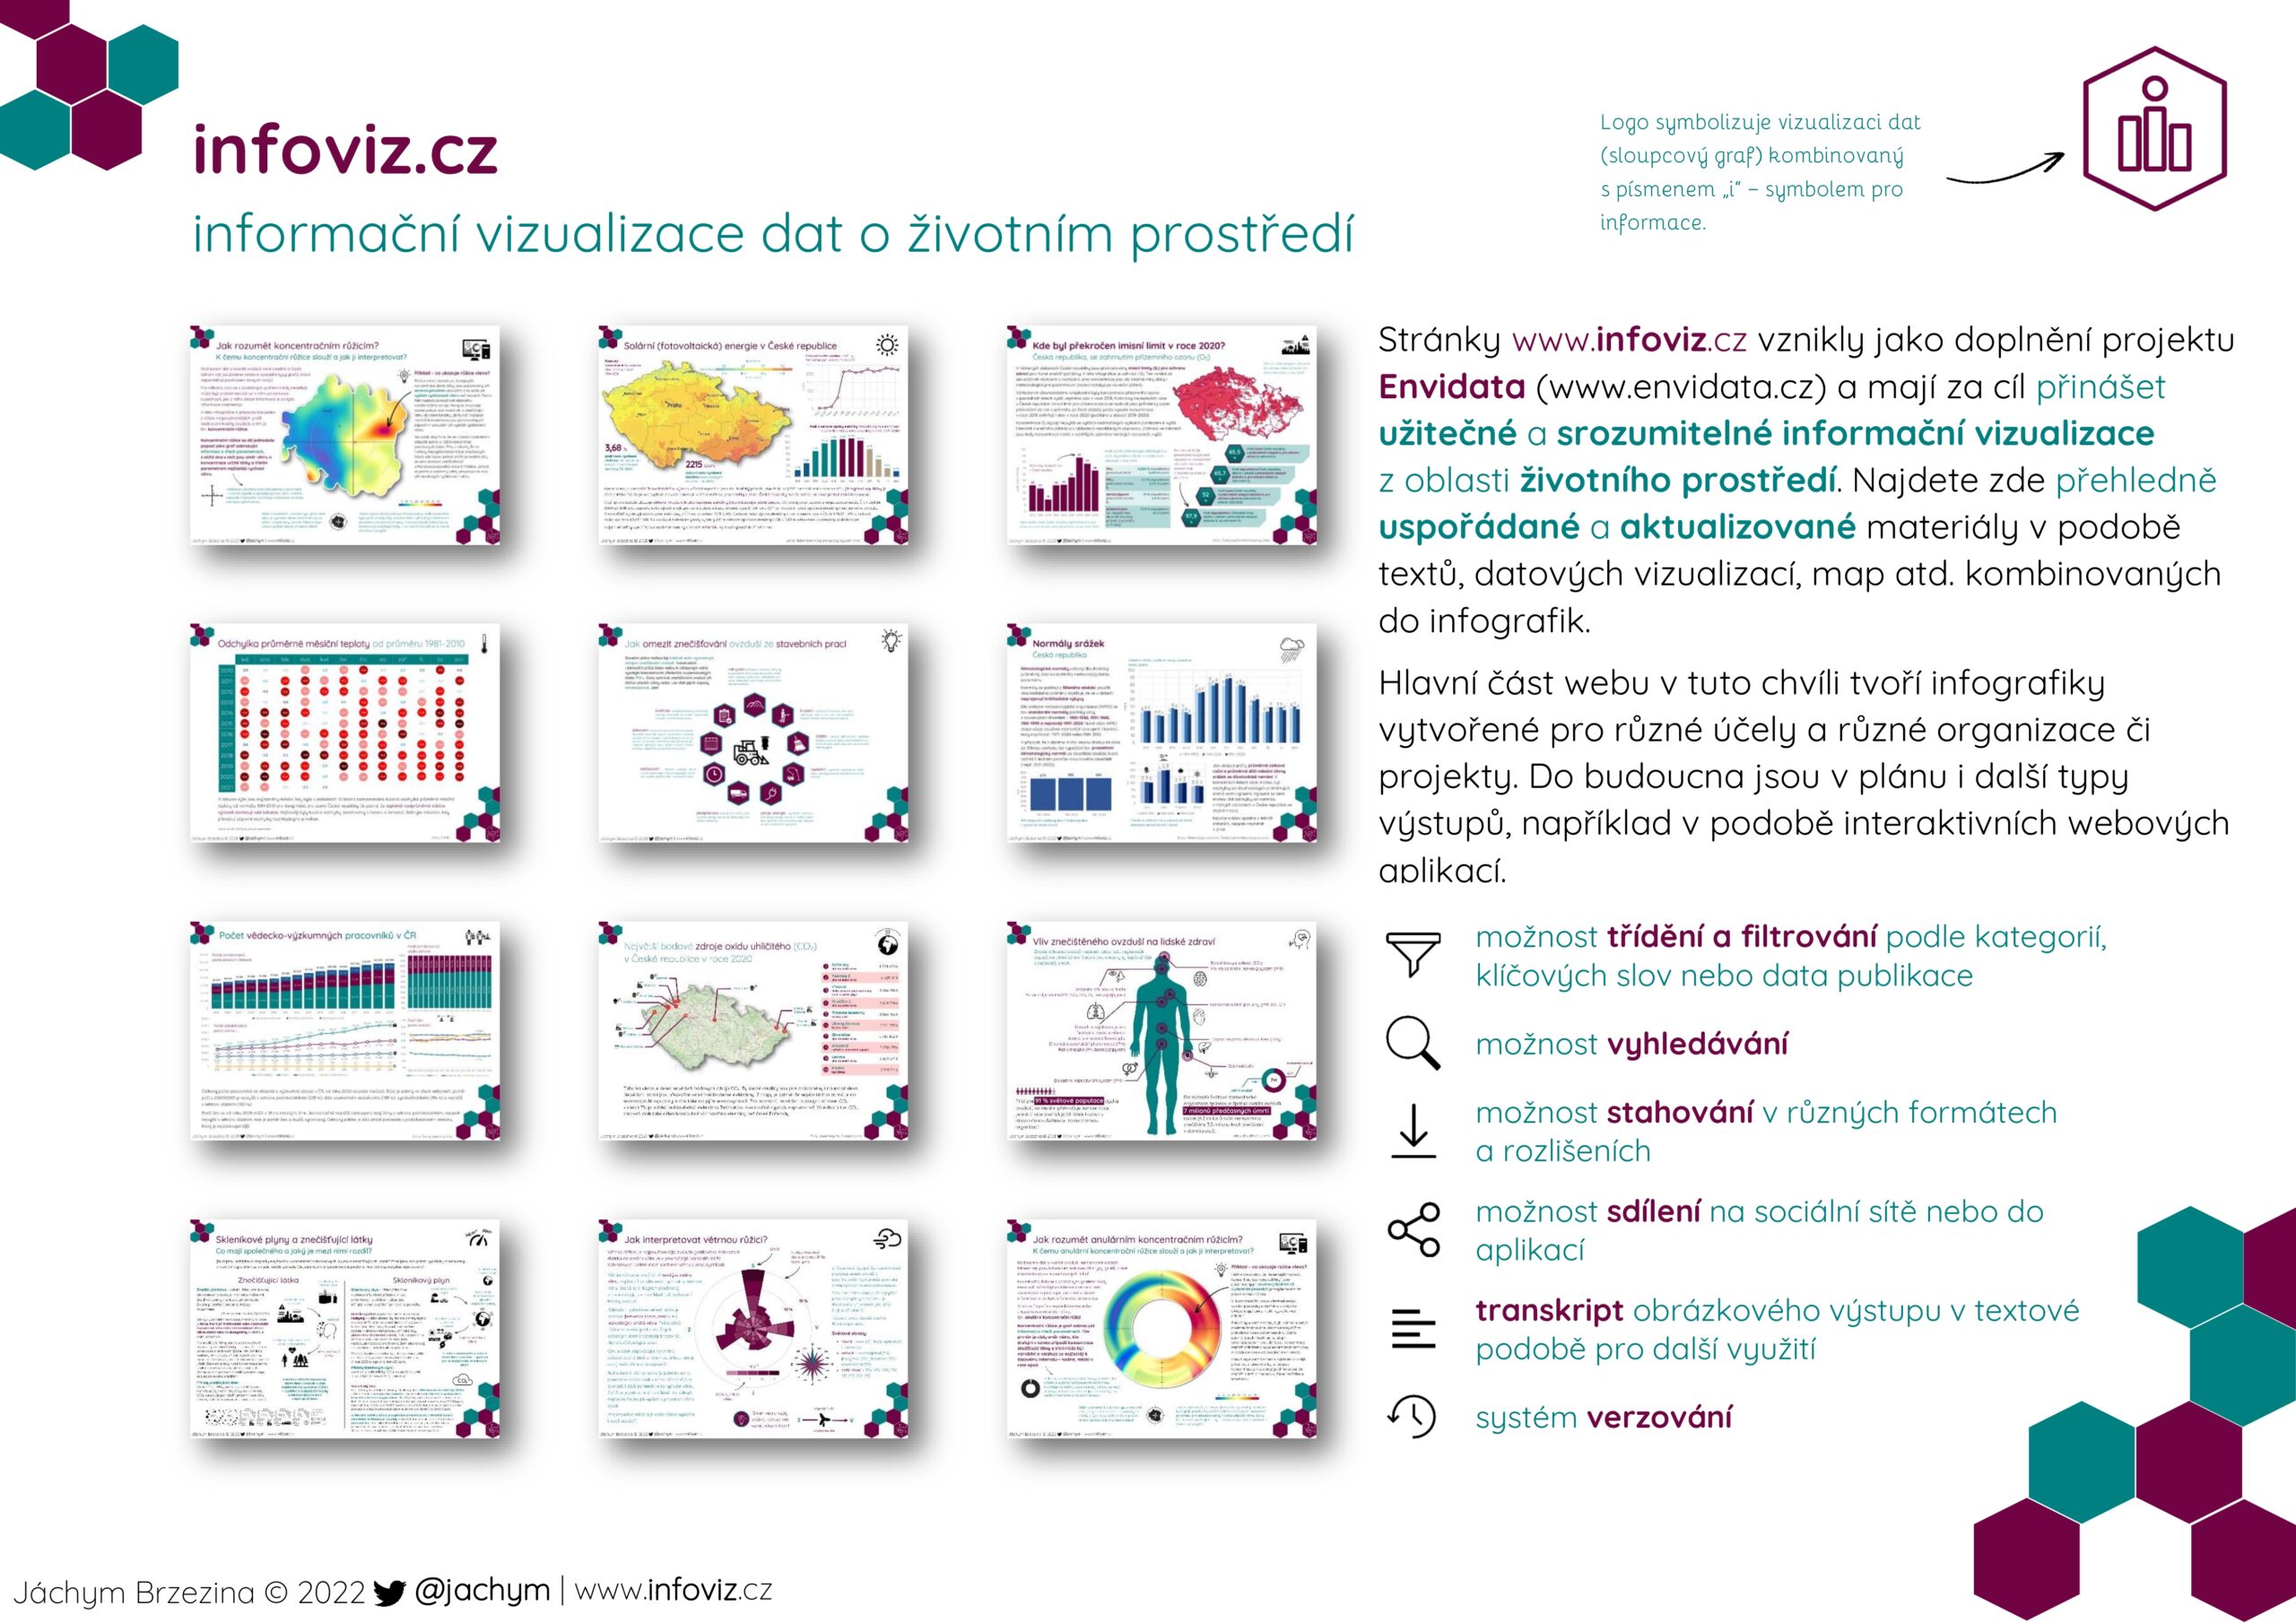 infoviz.cz – nové stránky věnované infografikám na témata spojená s životním prostředím1 min čtení